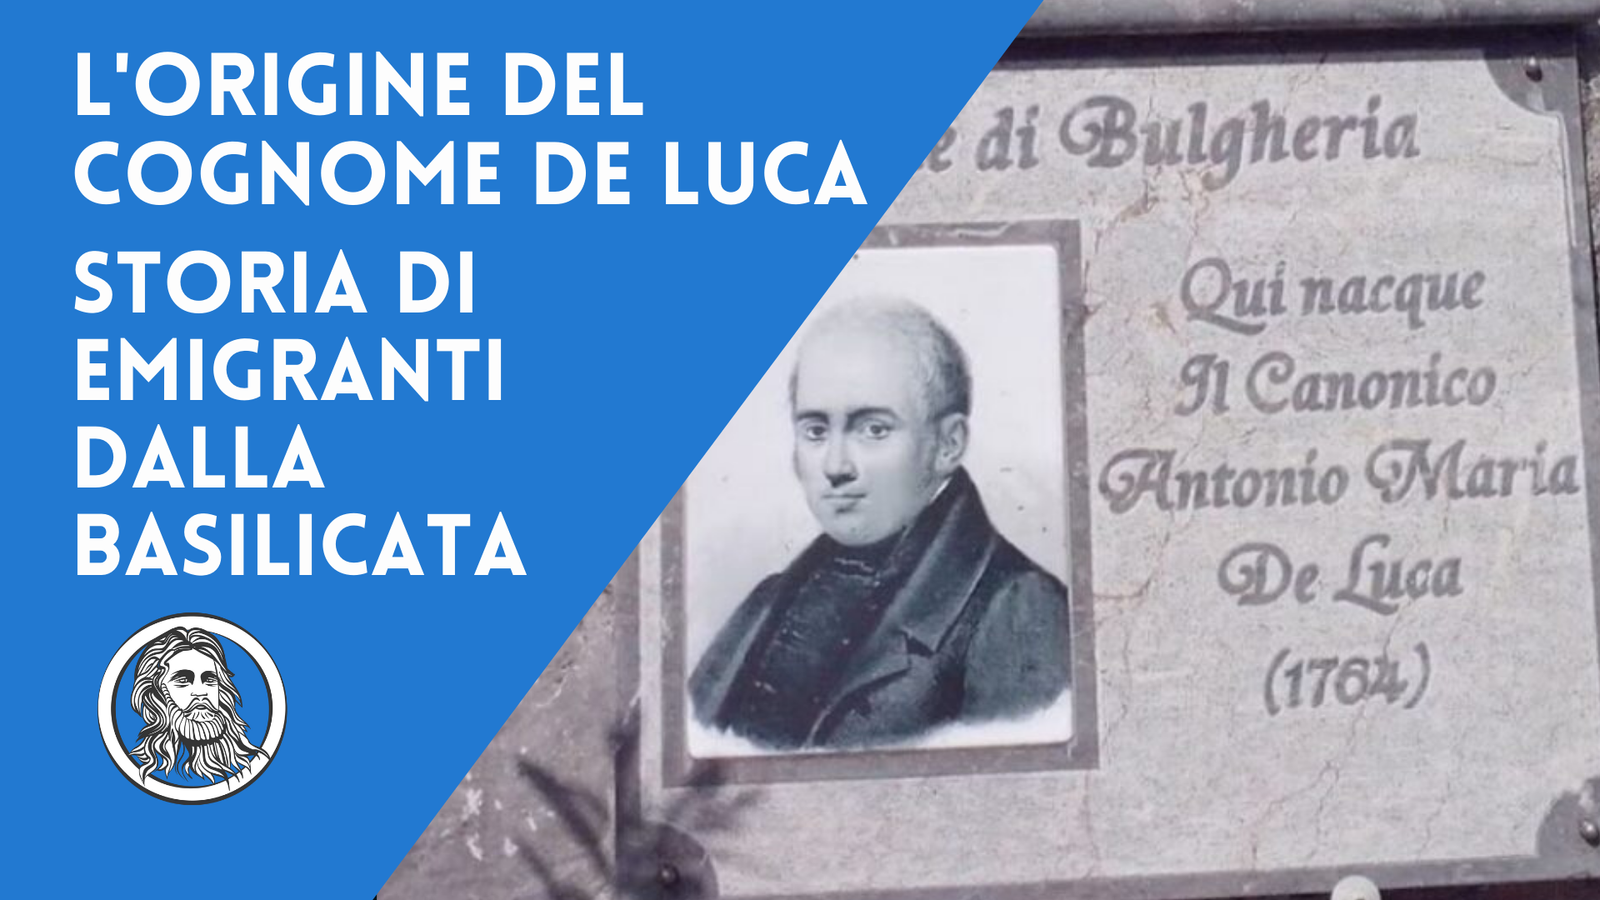 Origine e significato del cognome De Luca: una lunga storia di emigrazioni dalla Basilicata